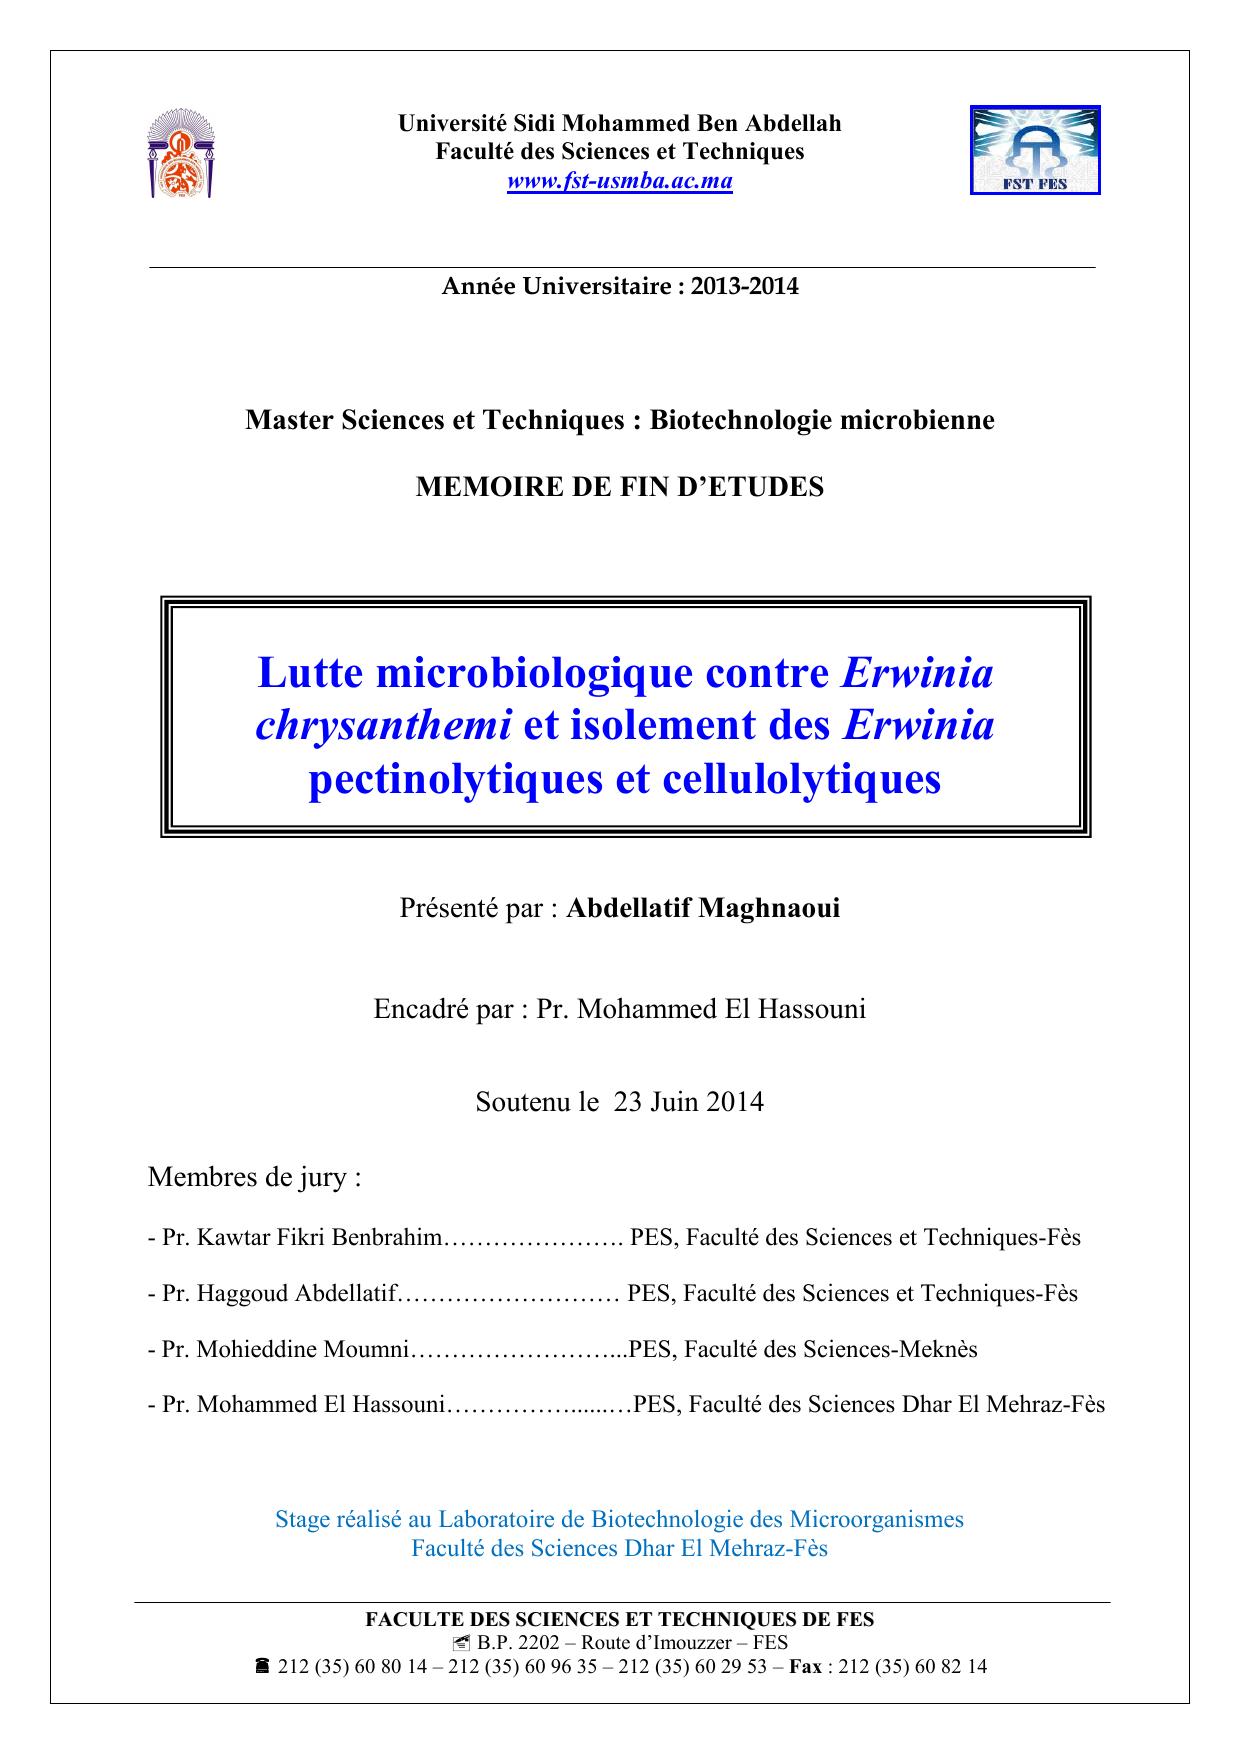 Lutte microbiologique contre Erwinia chrysanthemi et isolement des Erwinia pectinolytiques et cellulolytiques